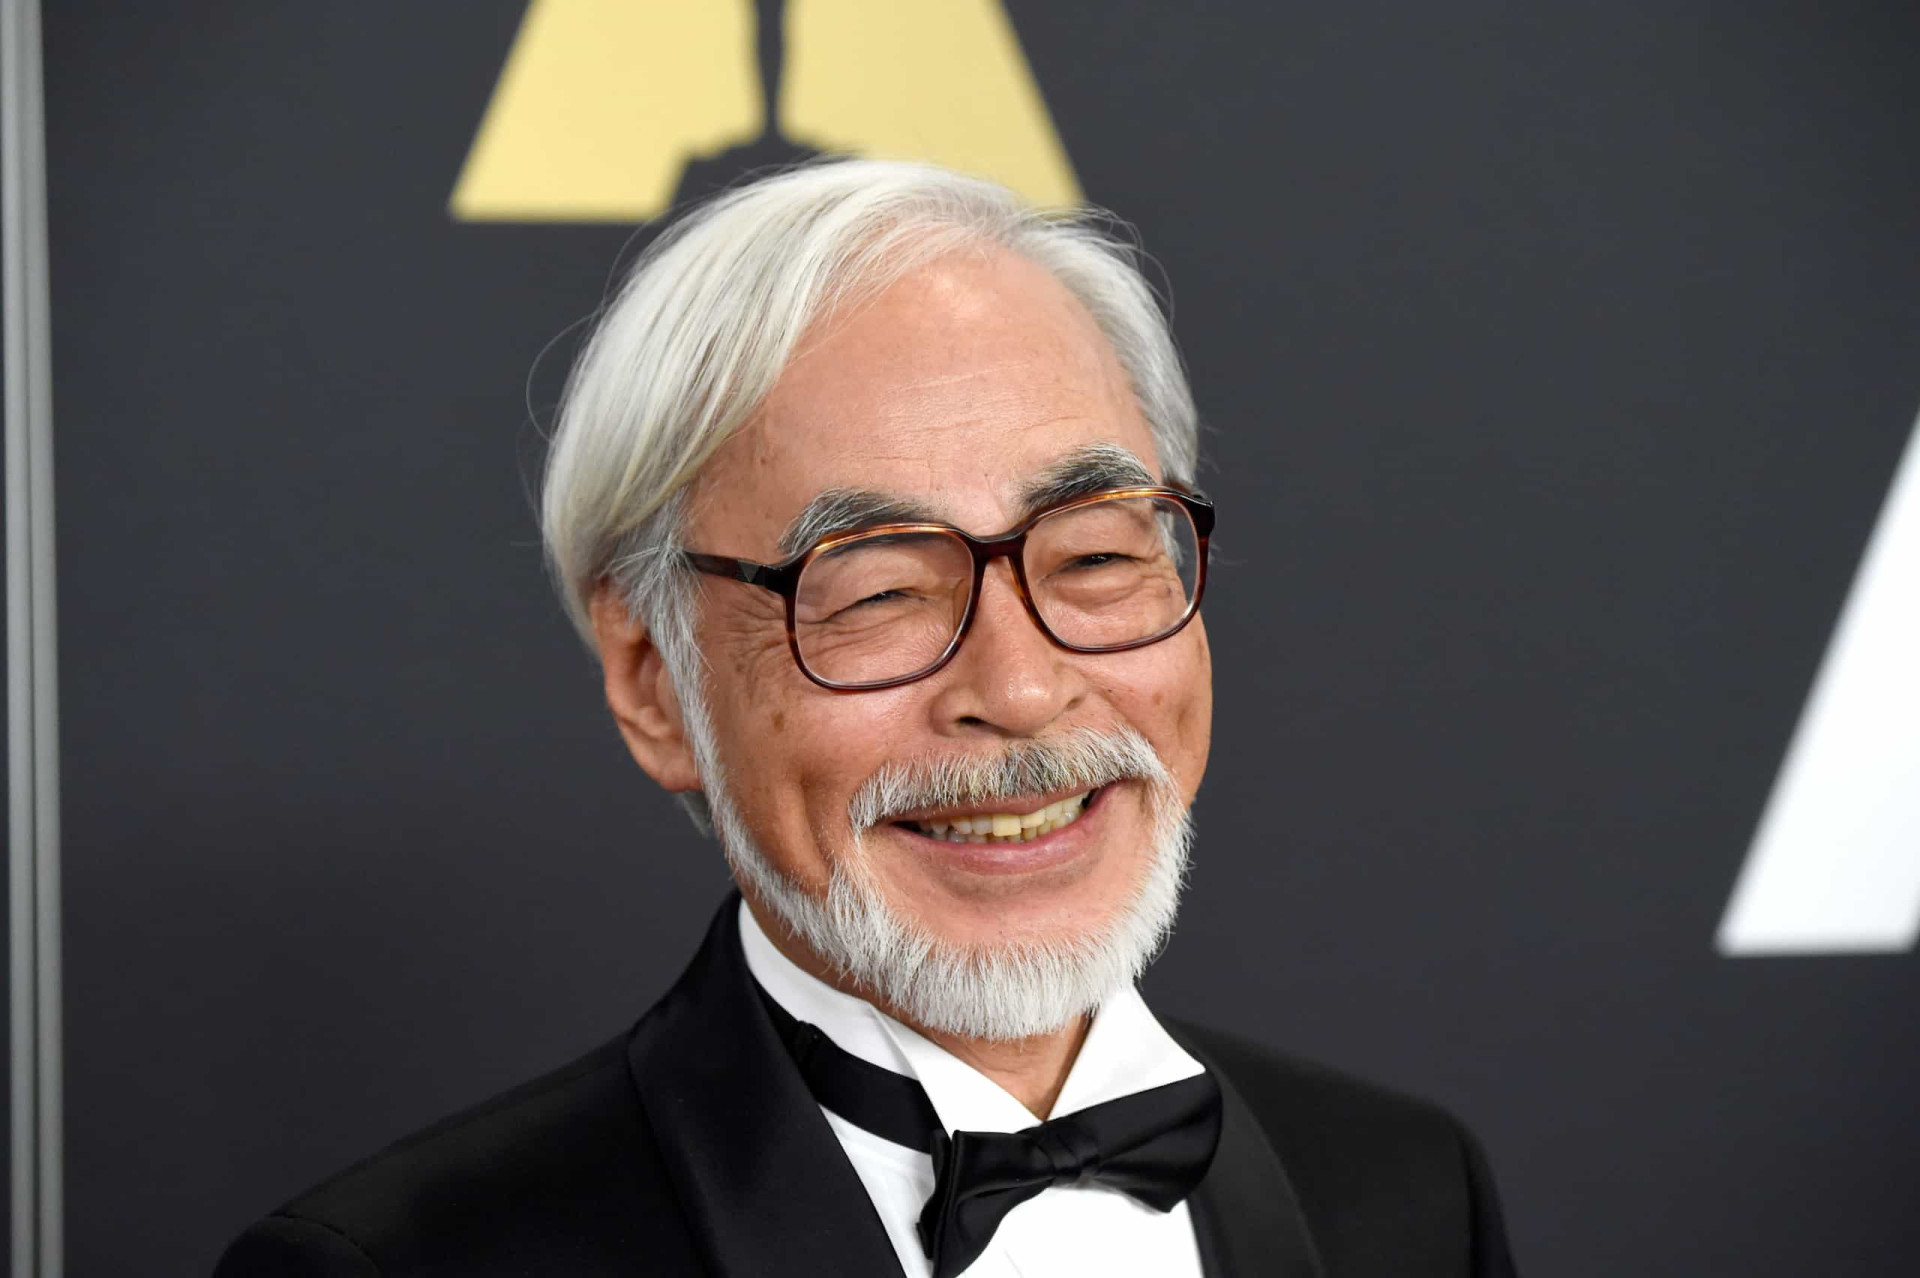 <p>Né à Tokyo le 5 janvier 1941, Hayao Miyazaki est le visage du Studio Ghibli depuis sa création et a réalisé la grande majorité des meilleurs films du studio.</p><p>Tu pourrais aussi aimer:<a href="https://www.starsinsider.com/n/147042?utm_source=msn.com&utm_medium=display&utm_campaign=referral_description&utm_content=518527v2"> La mort de ces personnages de série nous a brisé le cœur</a></p>